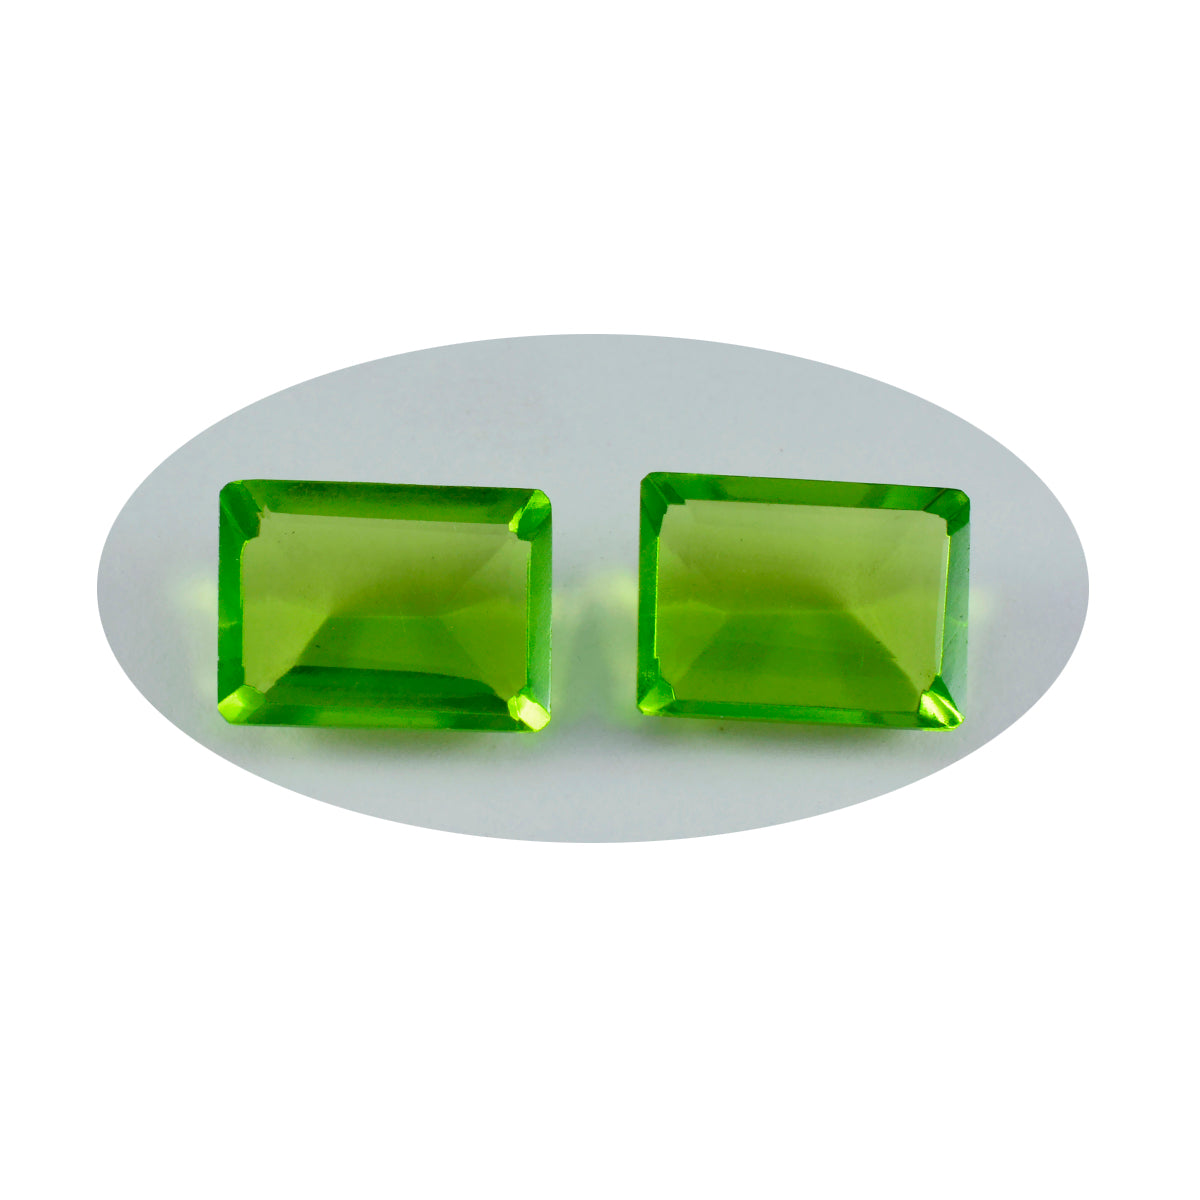 riyogems 1st grön peridot cz facetterad 10x12 mm oktagonform fantastisk kvalitet lös sten